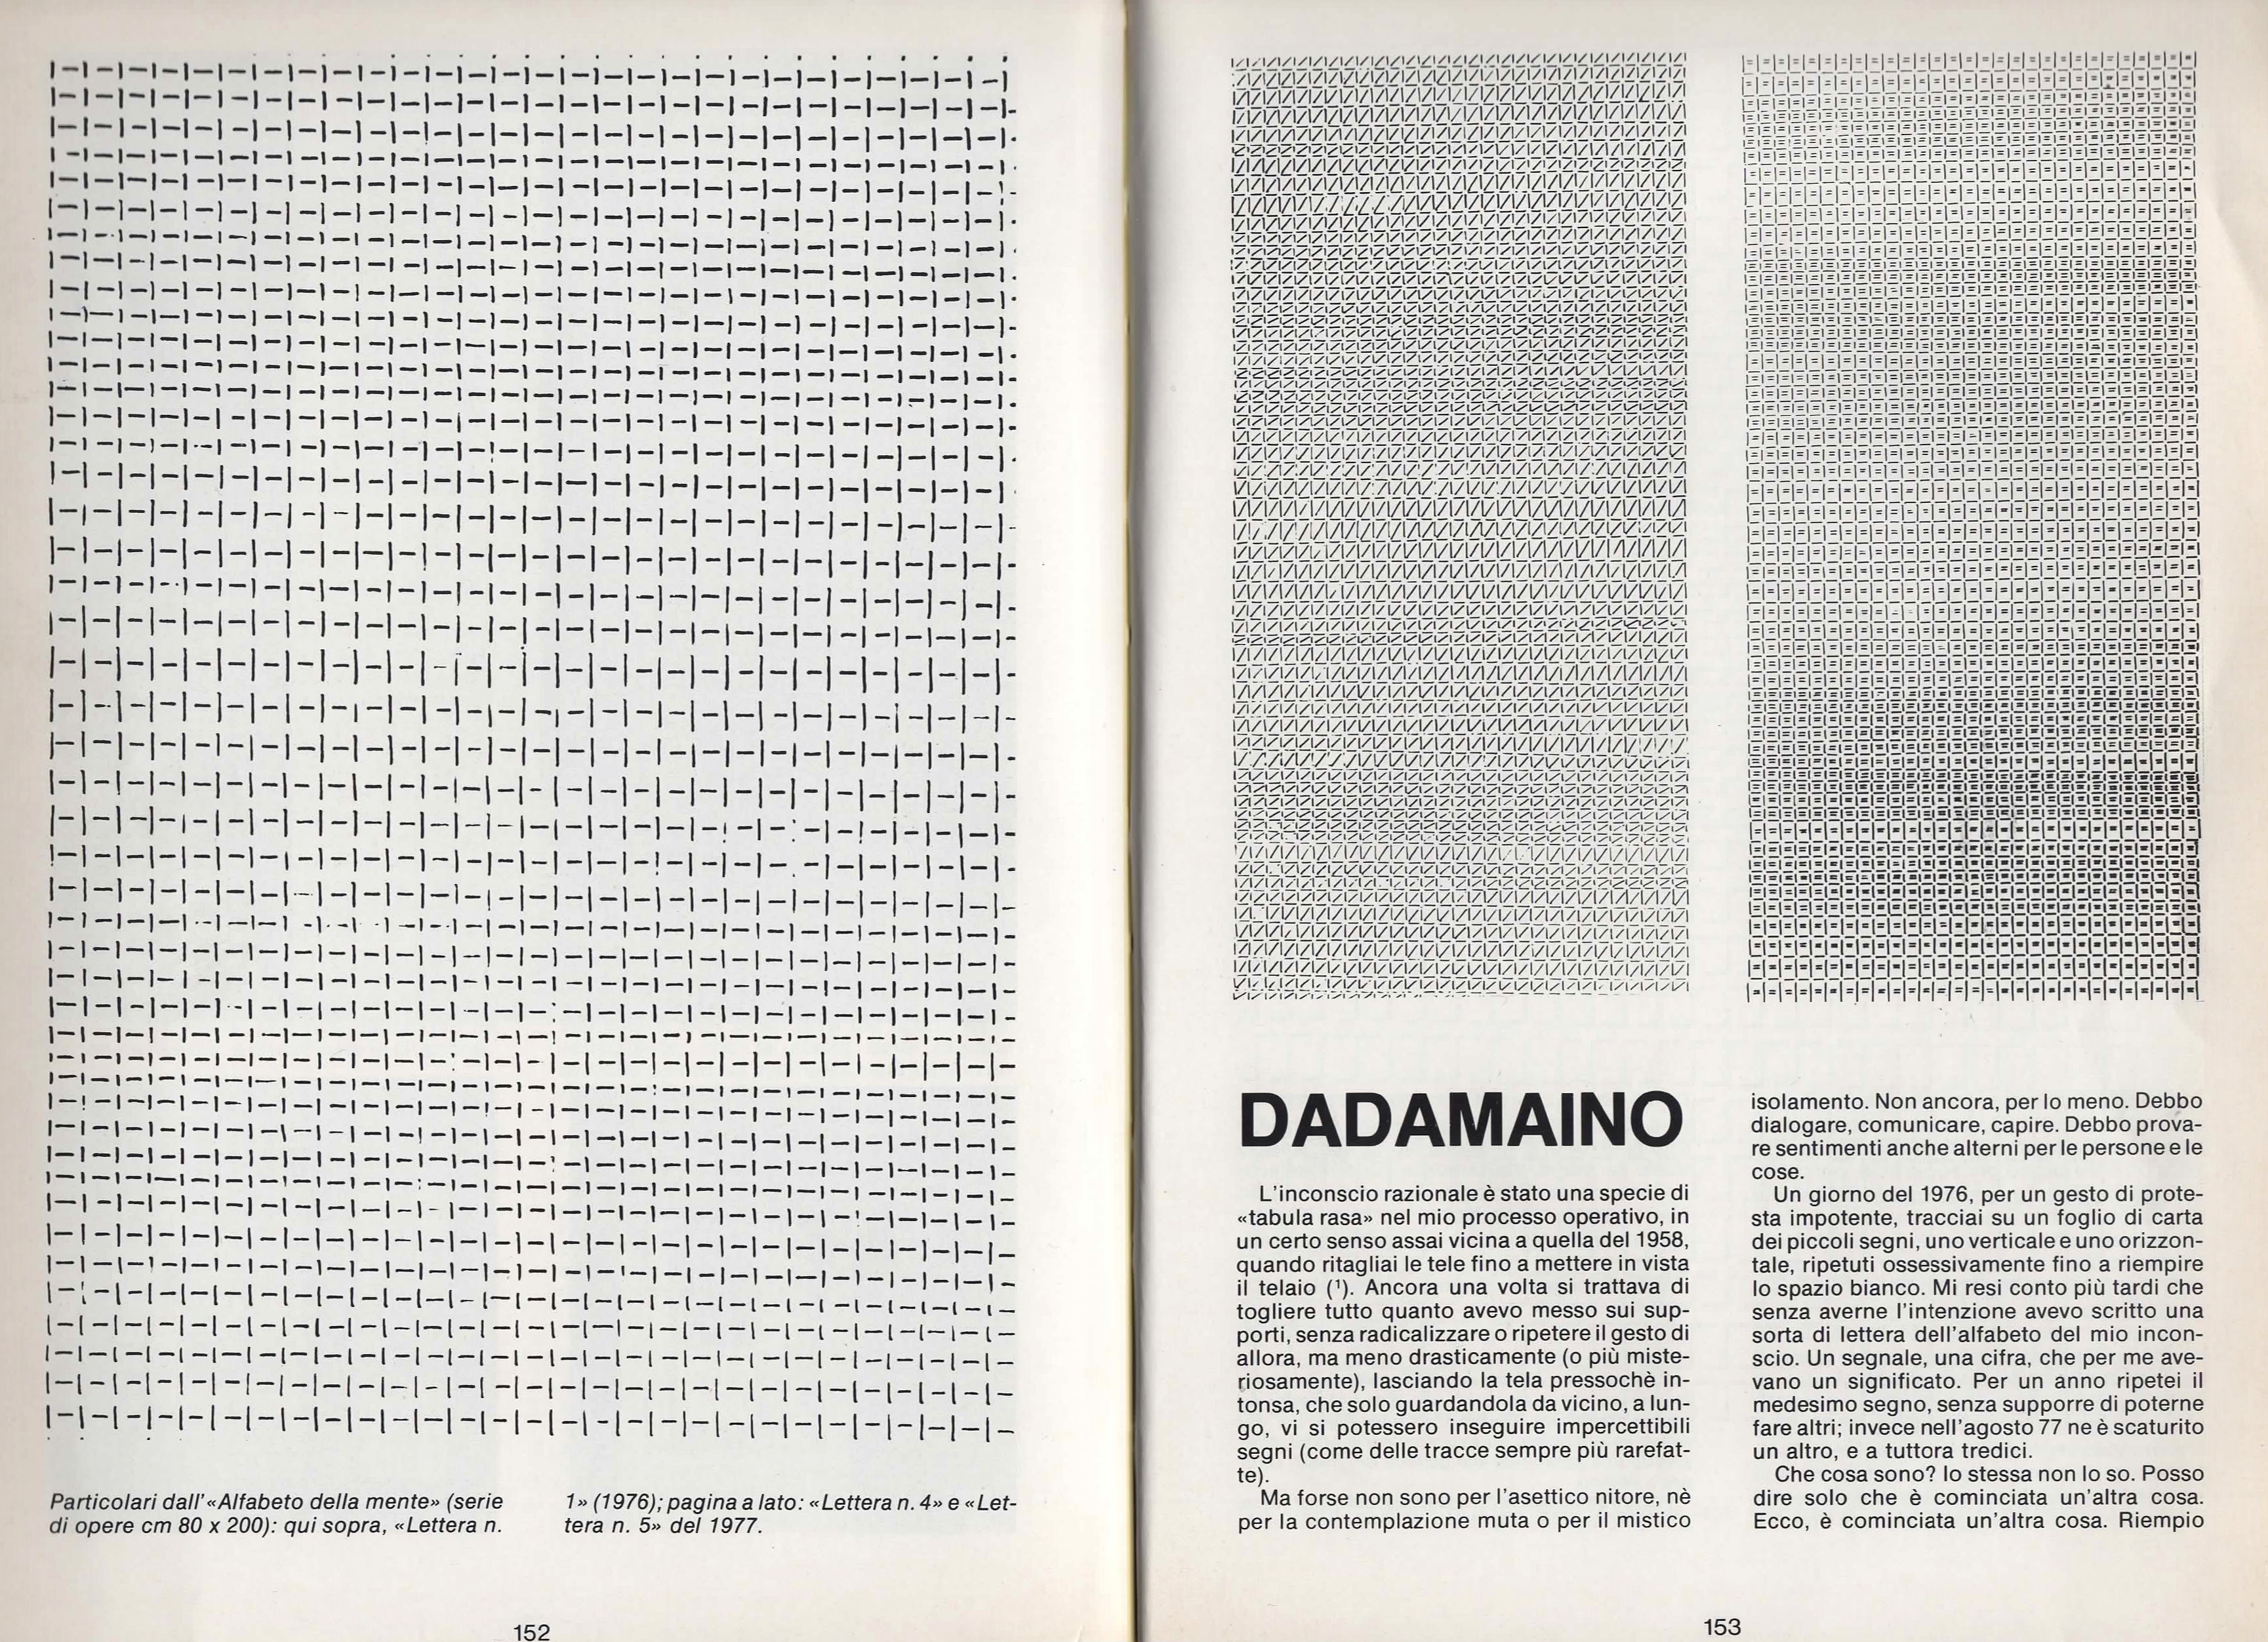 Dadamaino: presentazione autografa pubblicata su D'ARS n.91, pagg. 152-155